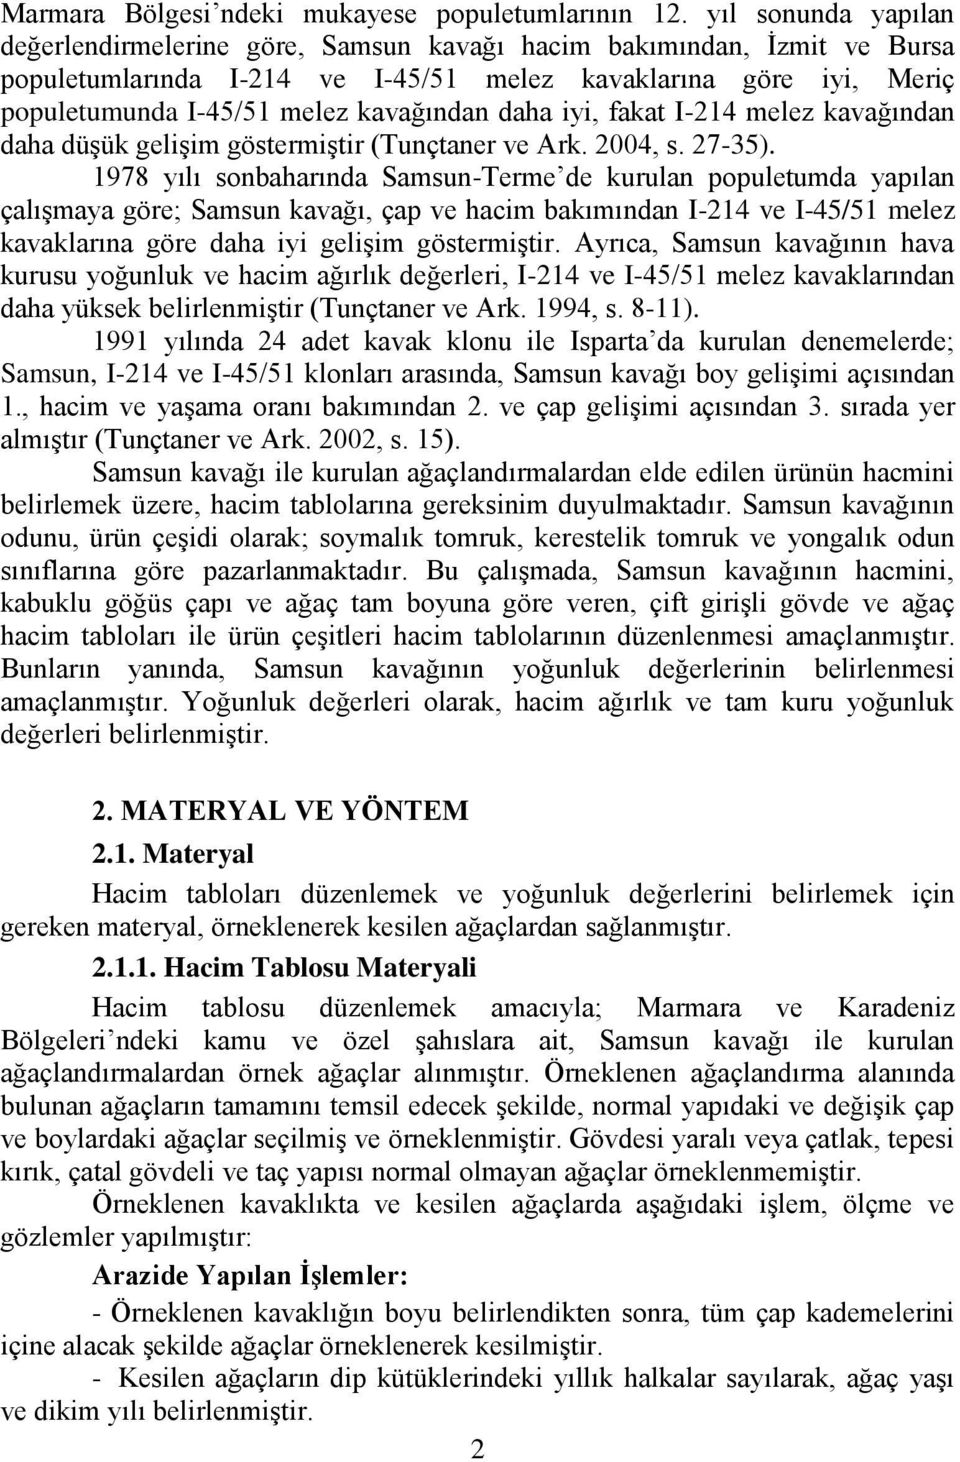 daha iyi, fakat I-214 melez kavağından daha düģük geliģim göstermiģtir (Tunçtaner ve Ark. 2004, s. 27-35).